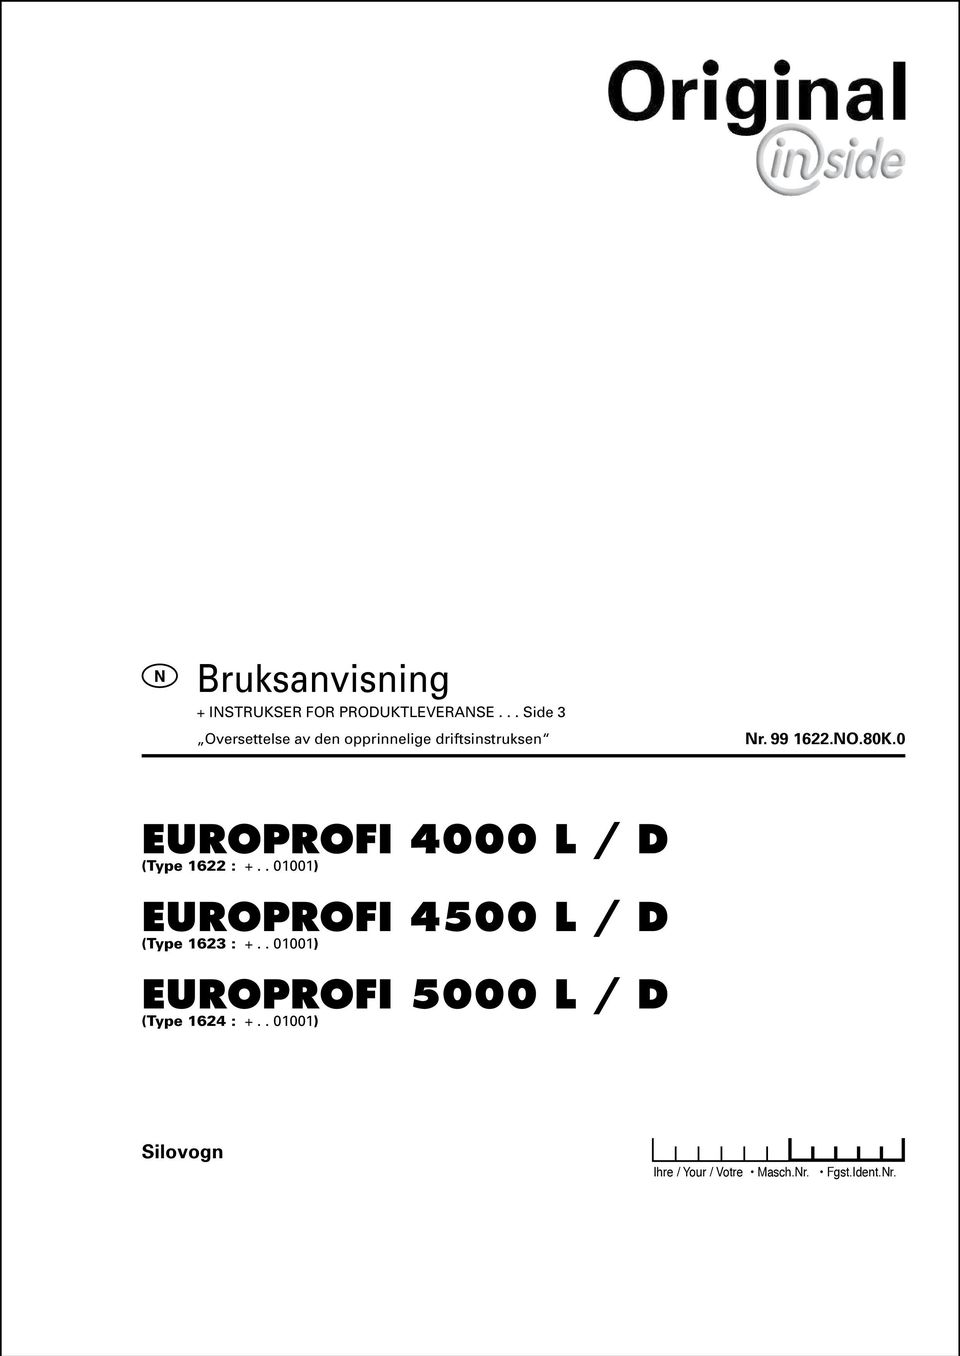 . 01001) EUROPROFI 4500 L / D (Type 1623 : +.